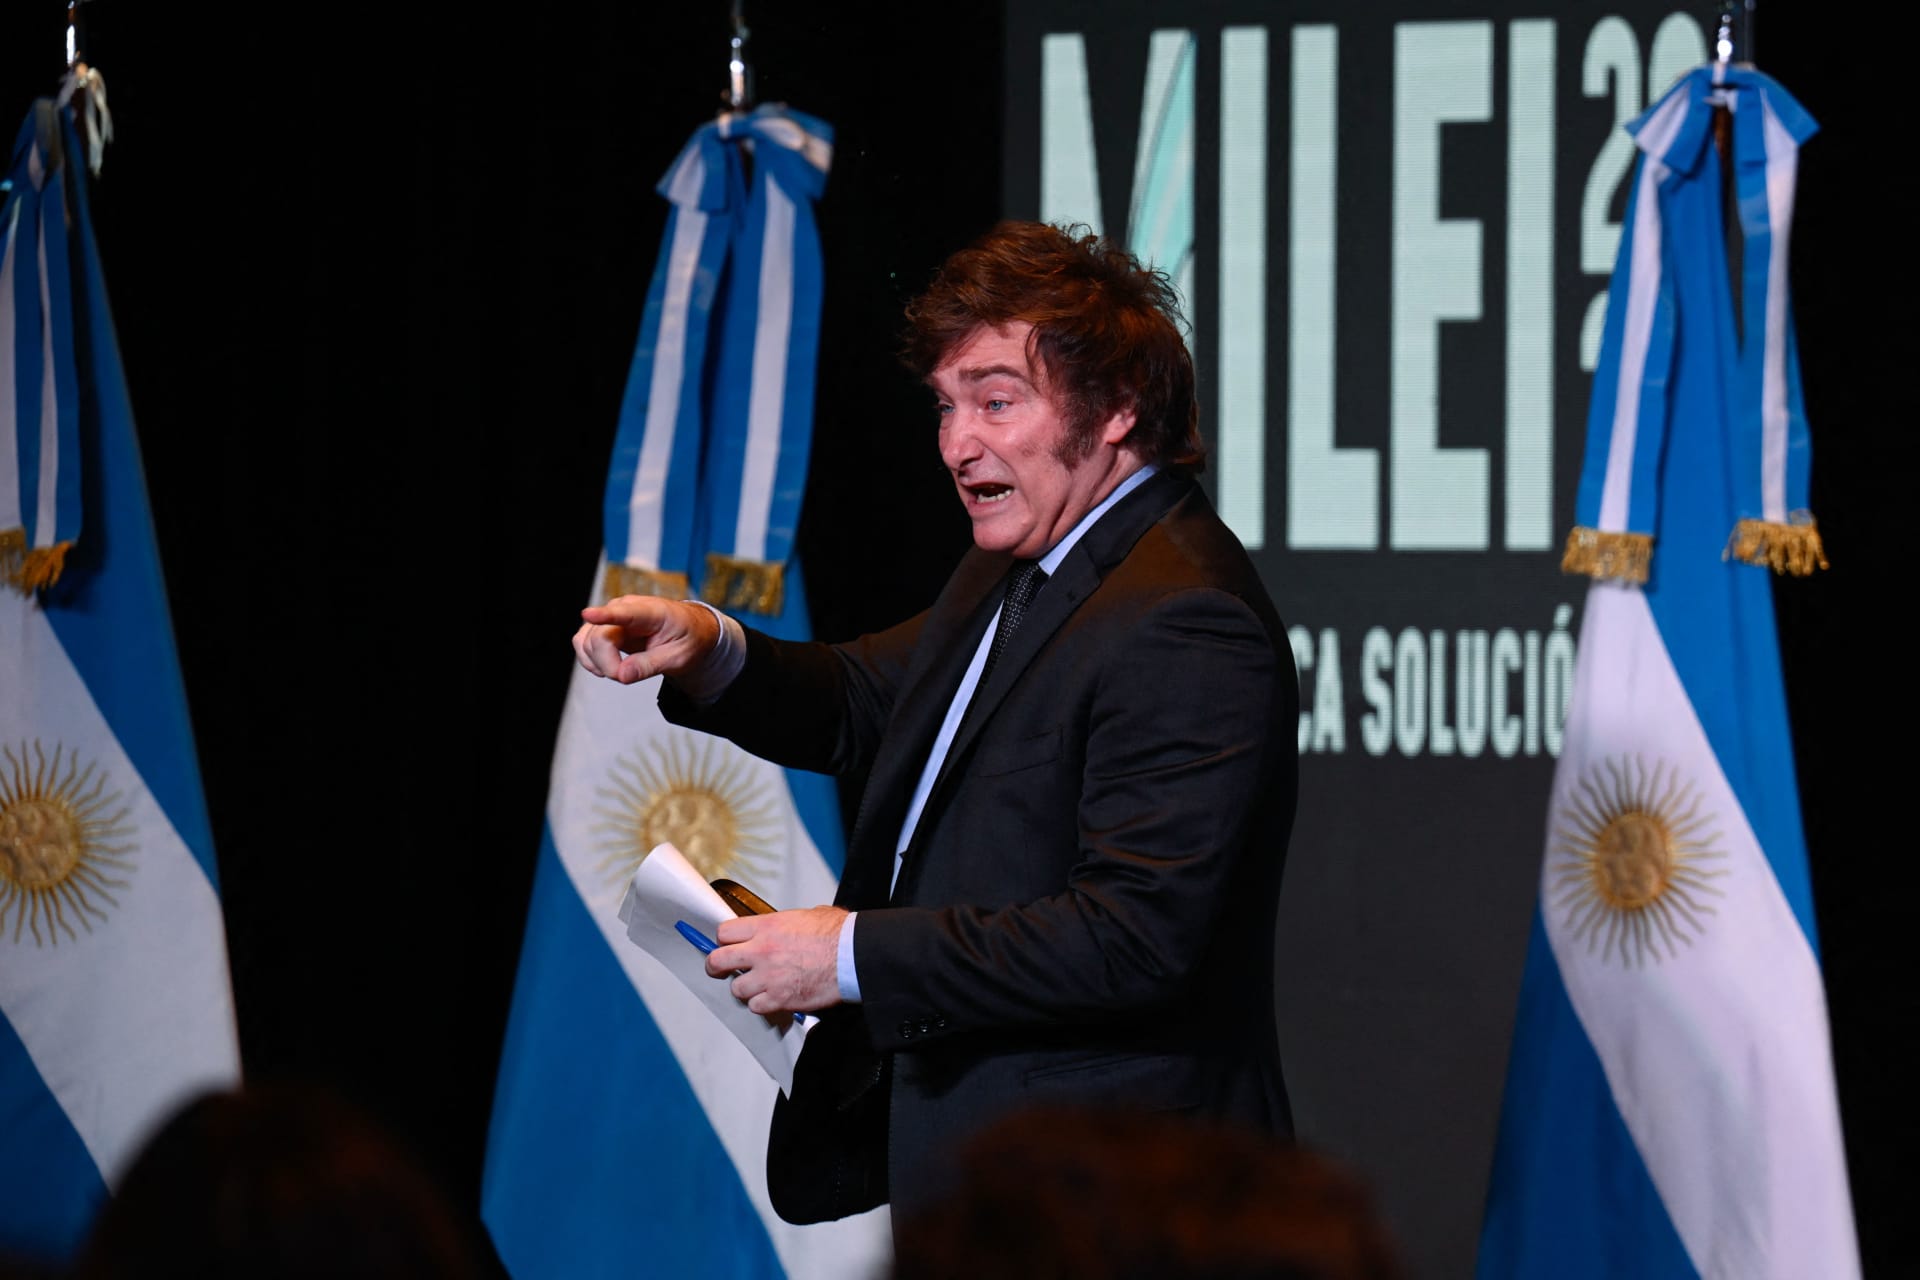 الرئيس الأرجنتيني الجديد يعلن عن خطة ضخمة لتحرير الاقتصاد بتعديل 300 قرار